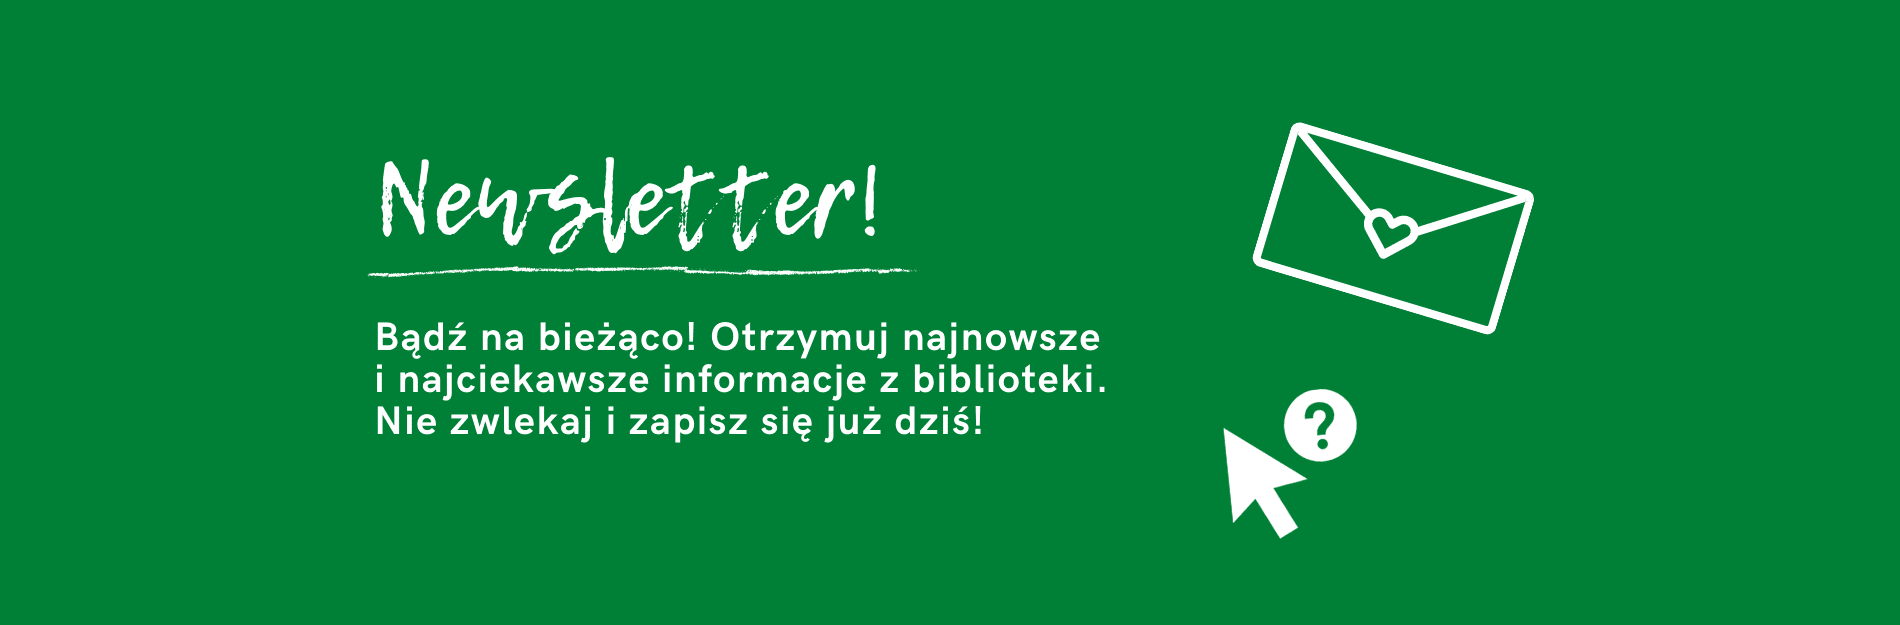 Zapisz się na newsletter Biblioteki Publicznej w Piasecznie!